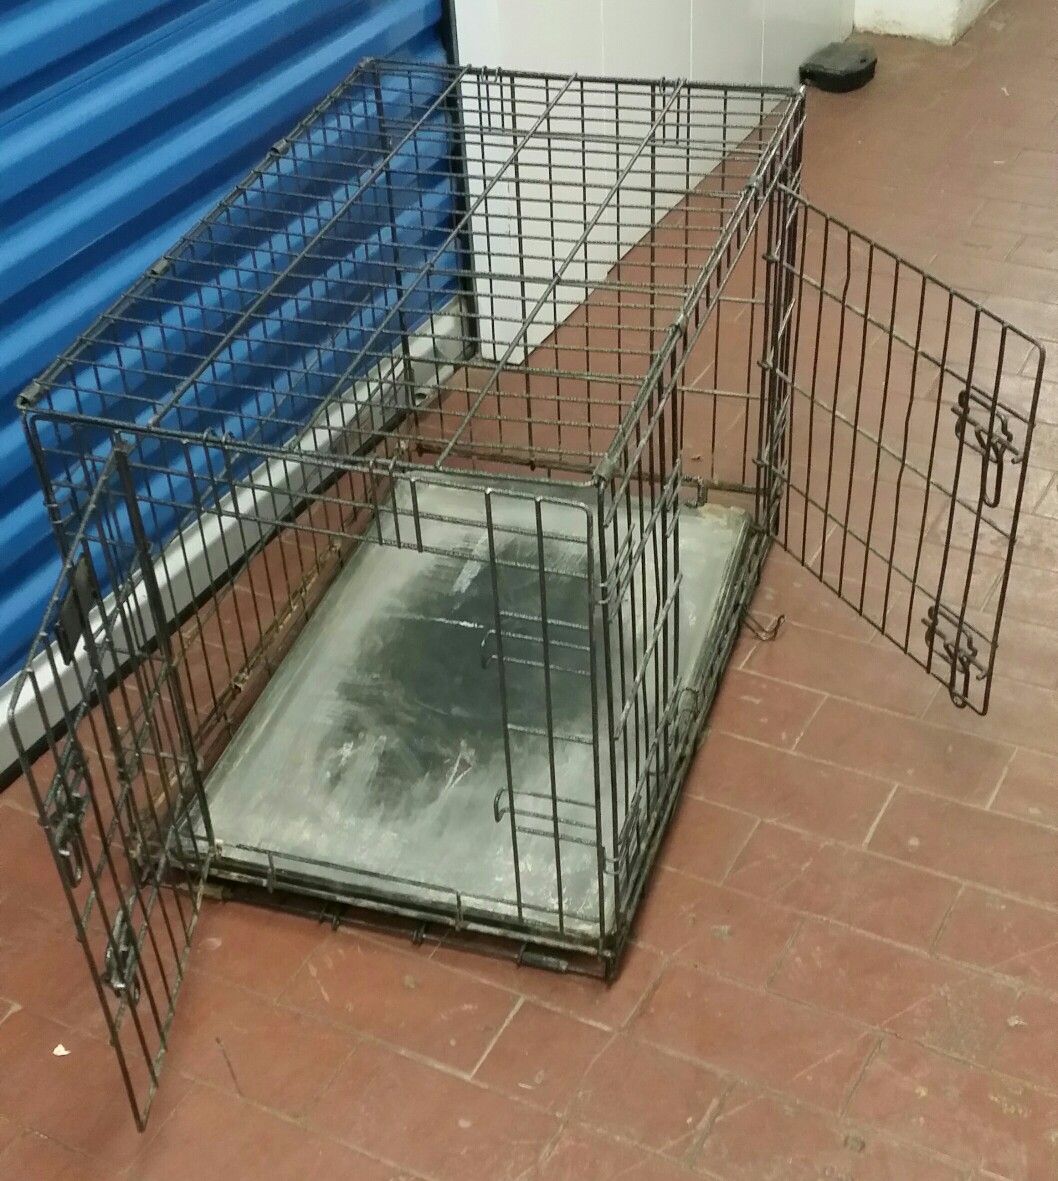 Large Dog cage